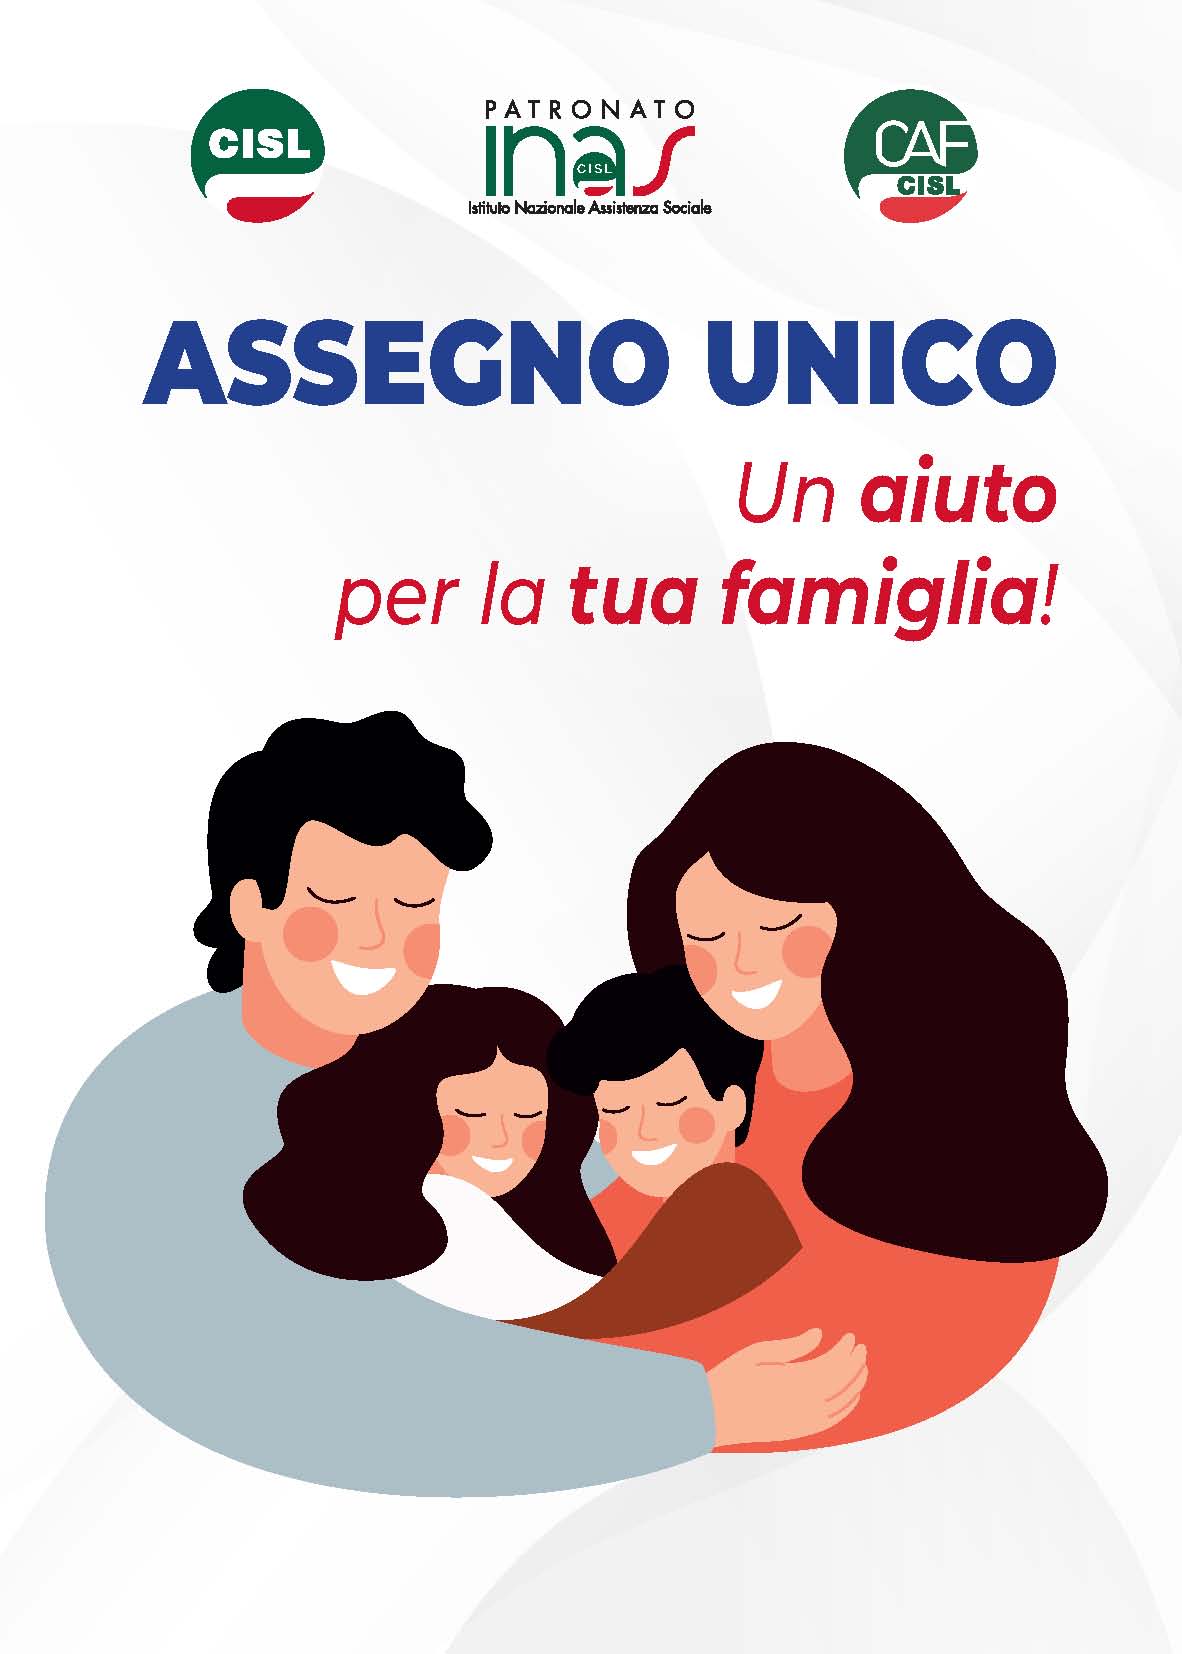 Featured image for “Assegno Unico – Conosciamolo meglio”